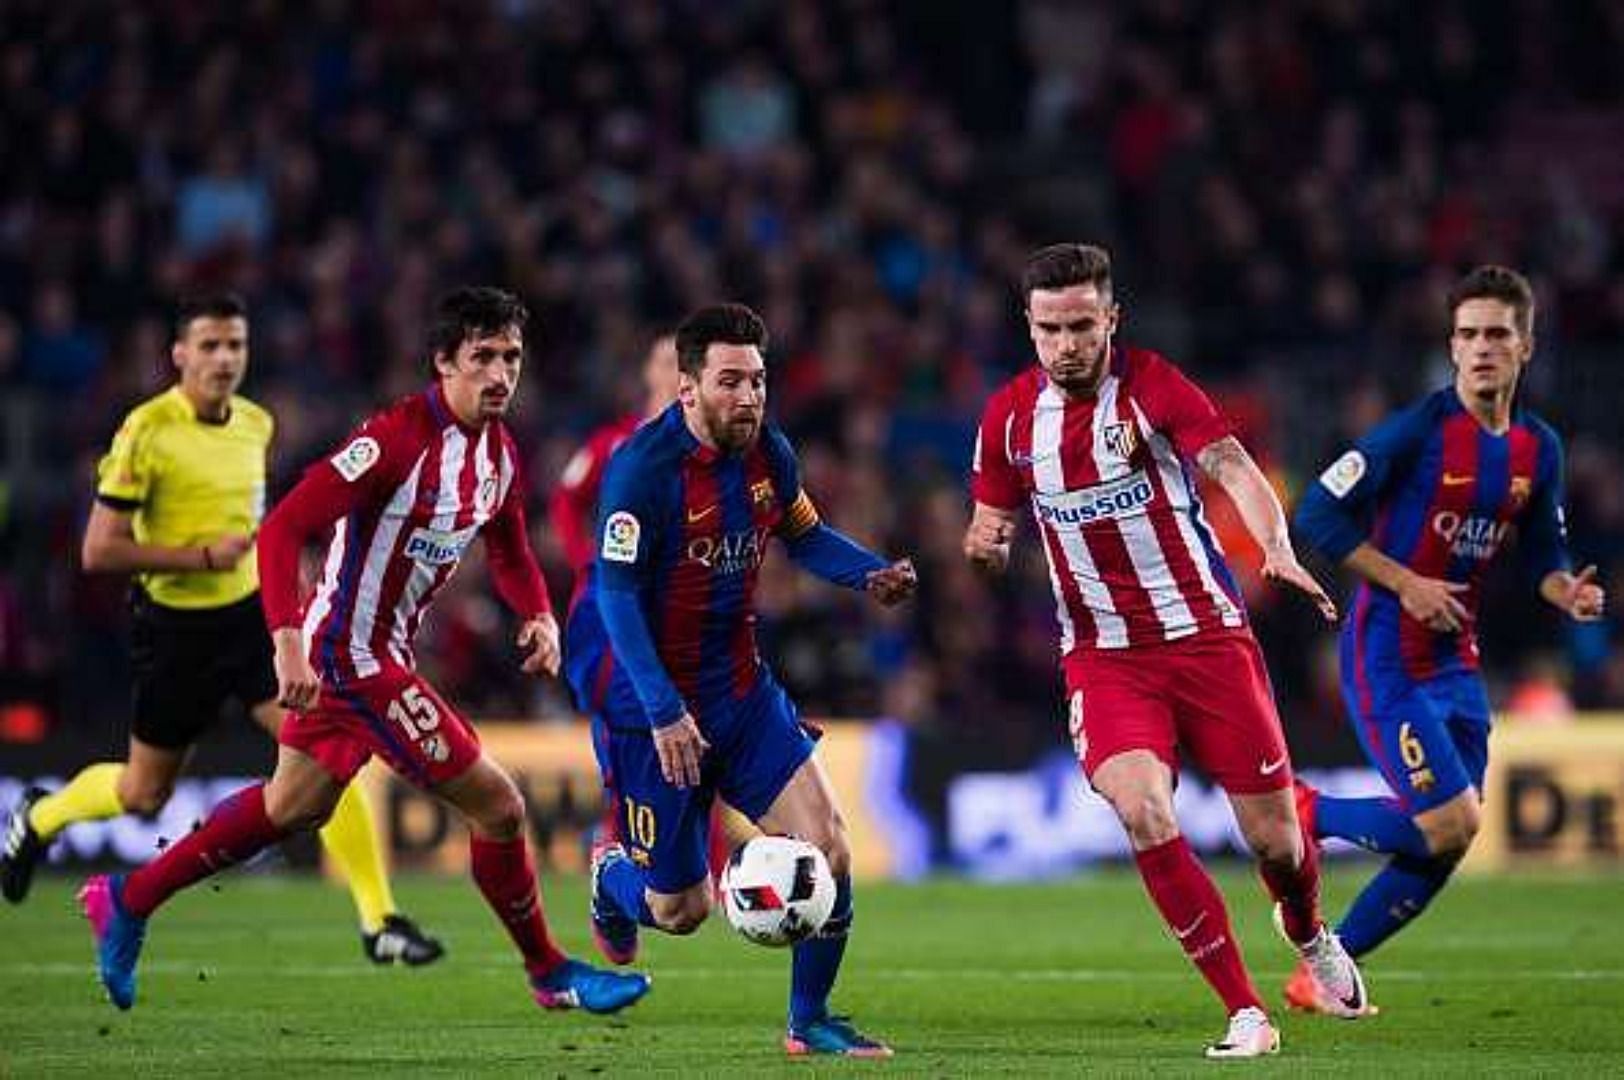 Messi es conocido por su habilidad para cambiar de dirección rápidamente y evadir entradas mientras corre a un ritmo vertiginoso.